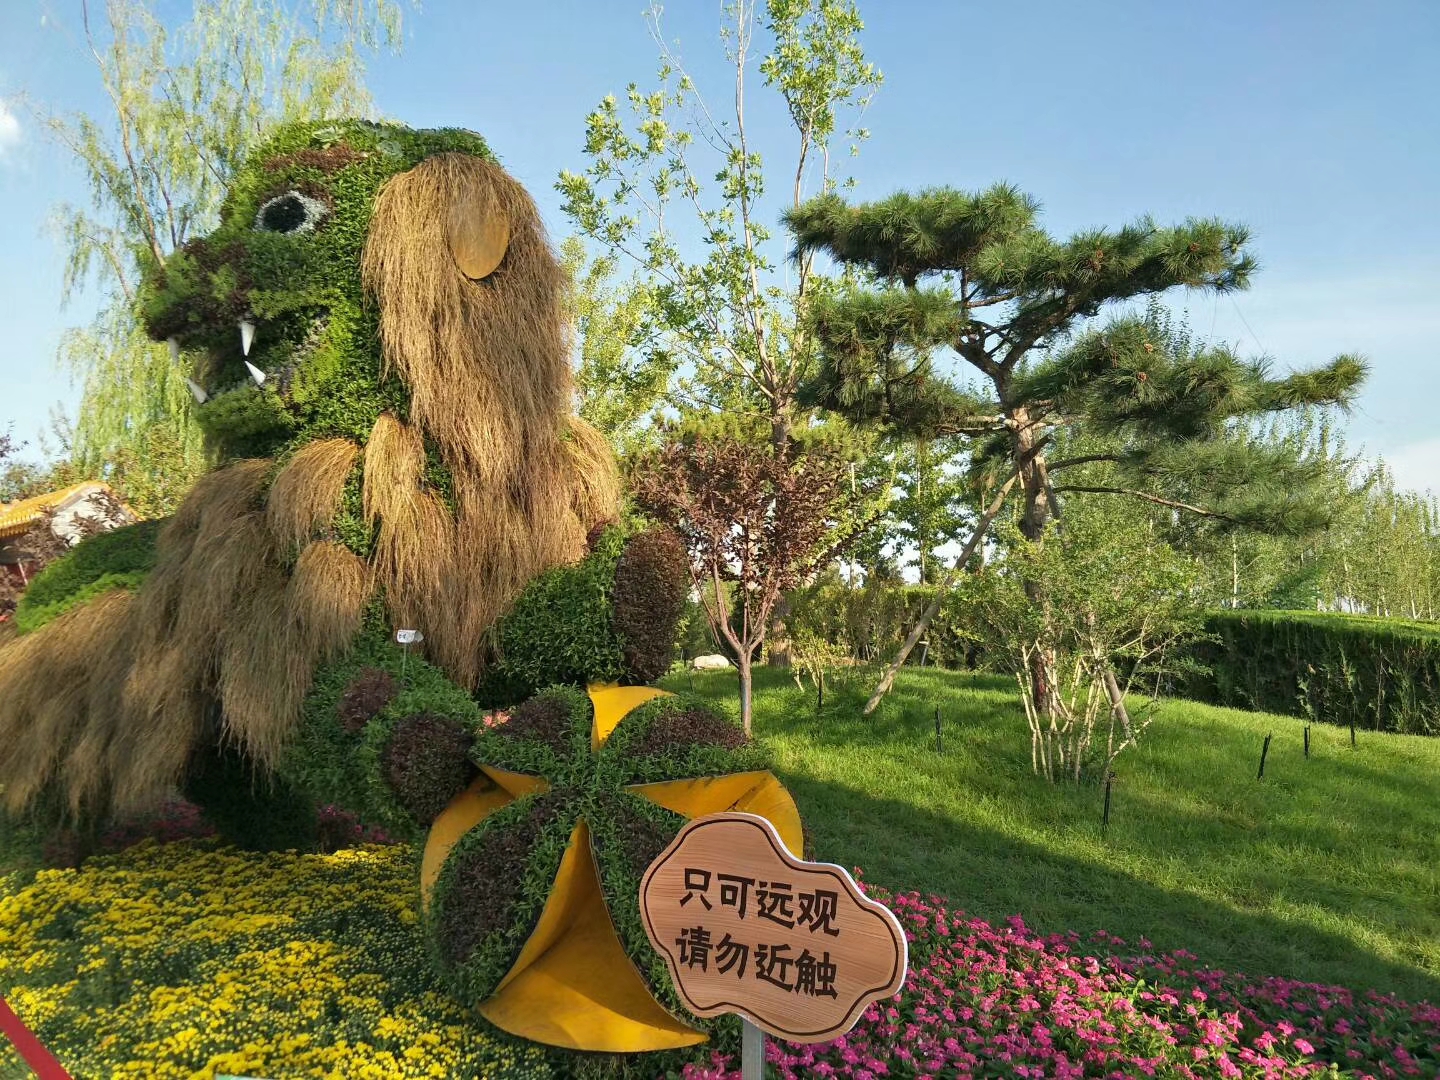 第十四届中国菊花展览会将于2022年在无锡市举办